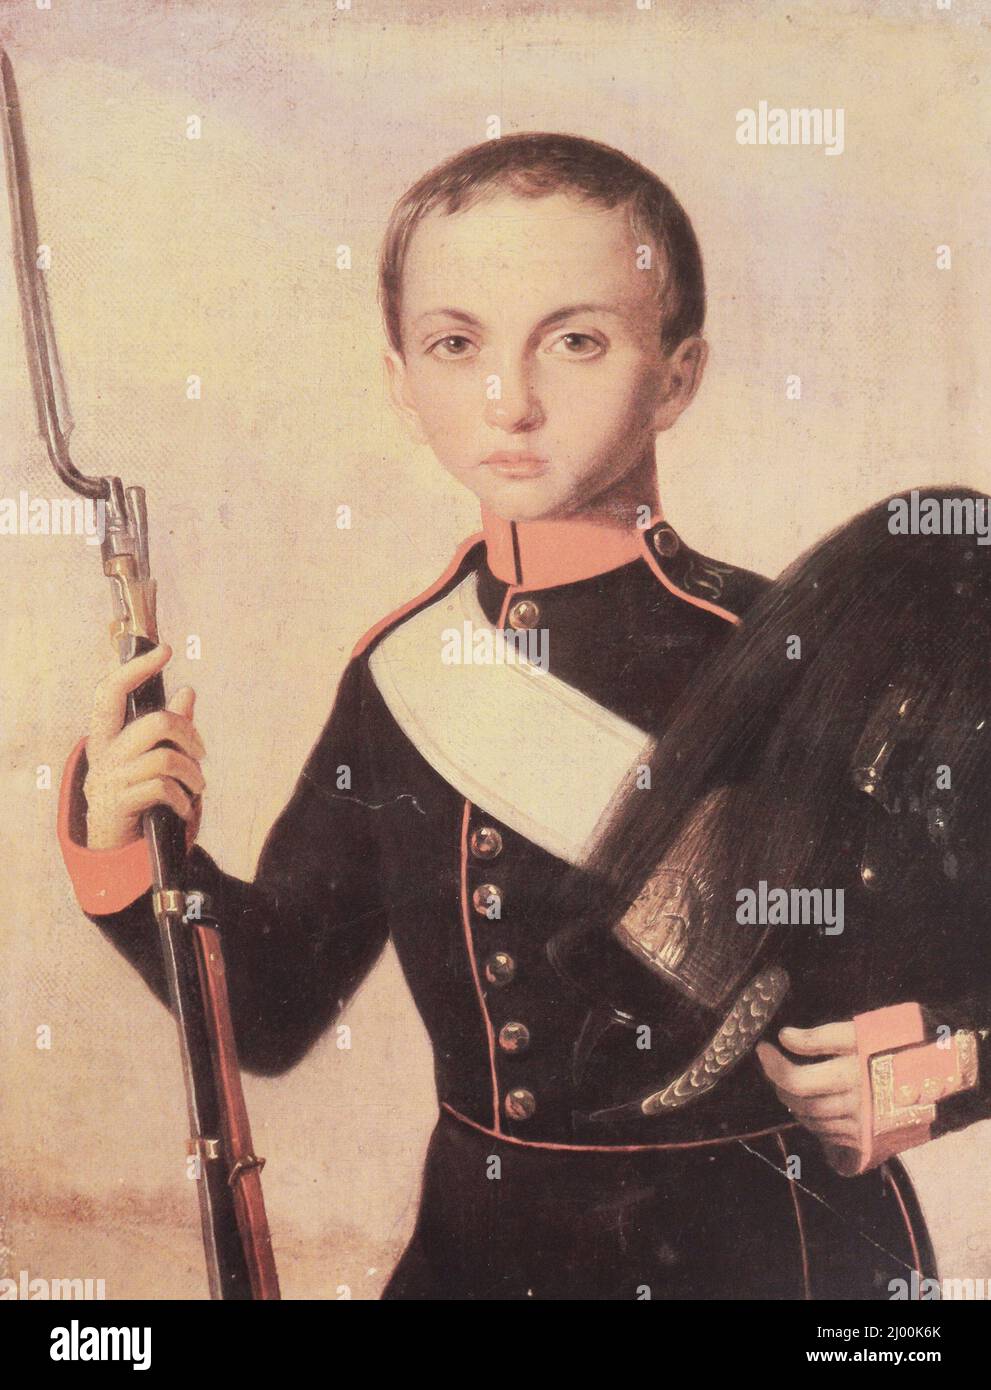 Porträt eines Kadetten des Kadettenkorps Arakcheevsky. Gemälde aus dem Jahr 1840s. Stockfoto